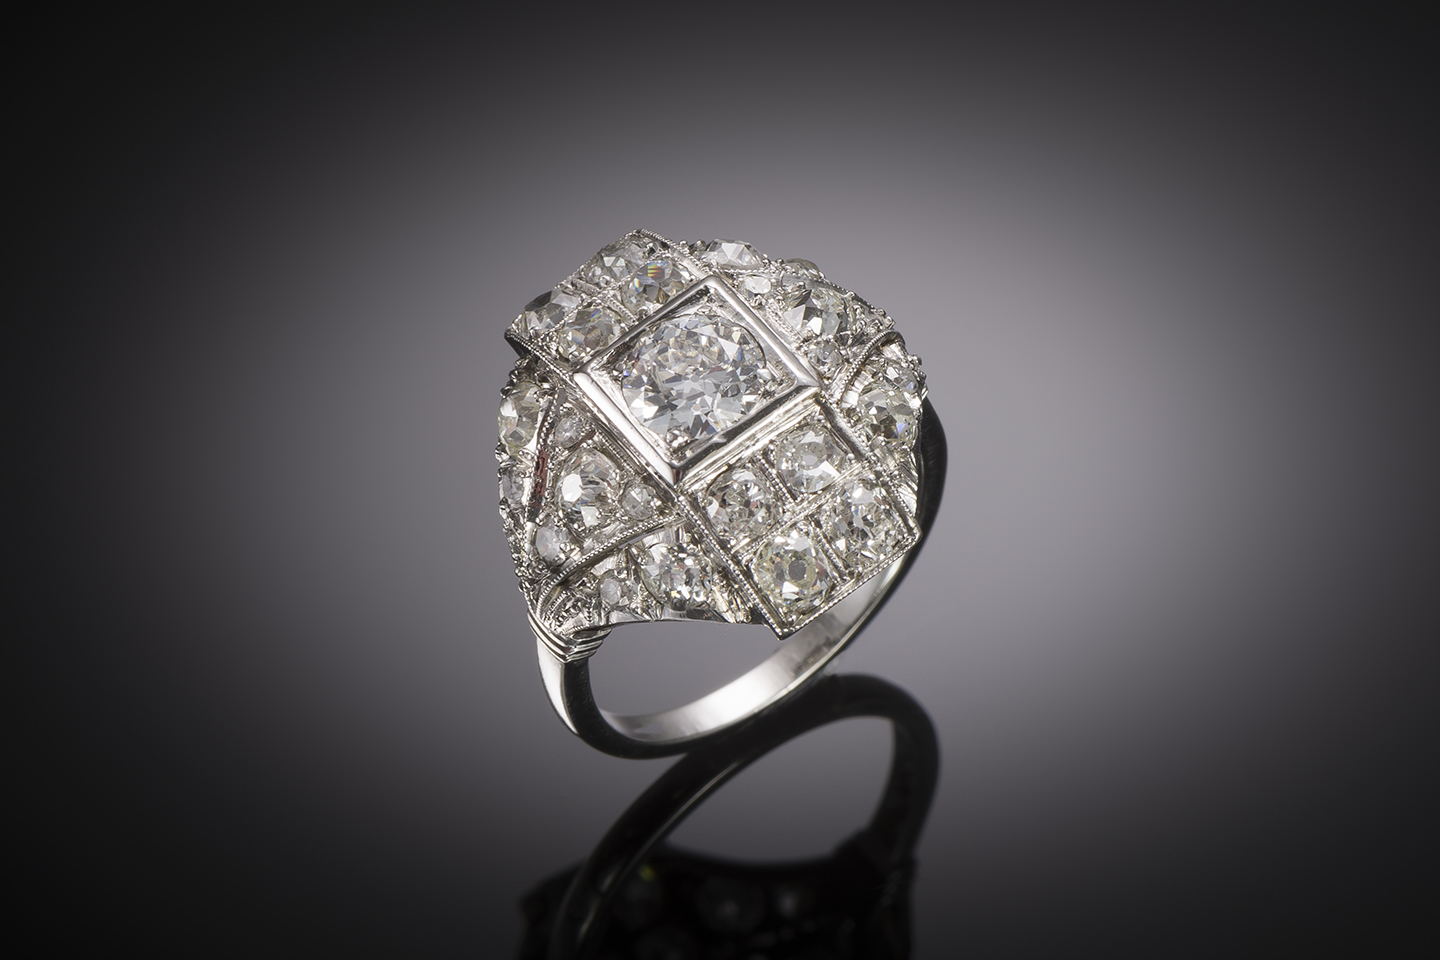 Bague Art déco diamants (1,70 carat). Travail français vers 1930.-1